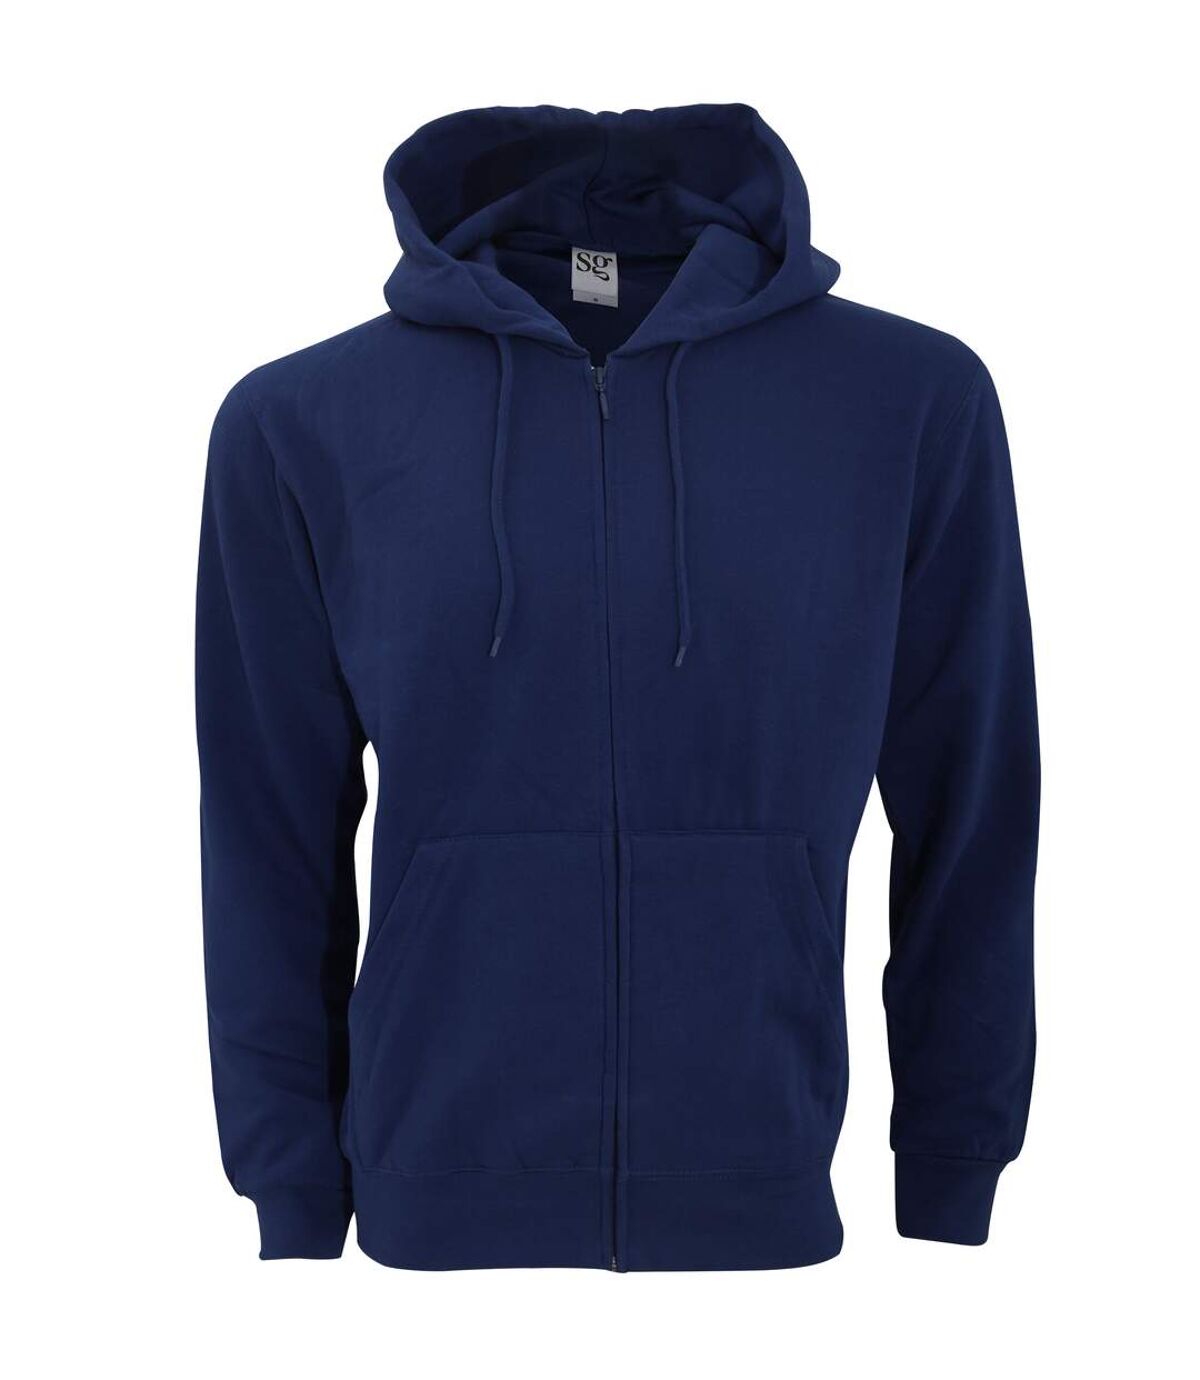 SG - Sweatshirt uni à capuche et fermeture zippée - Homme (Bleu marine) - UTBC1075